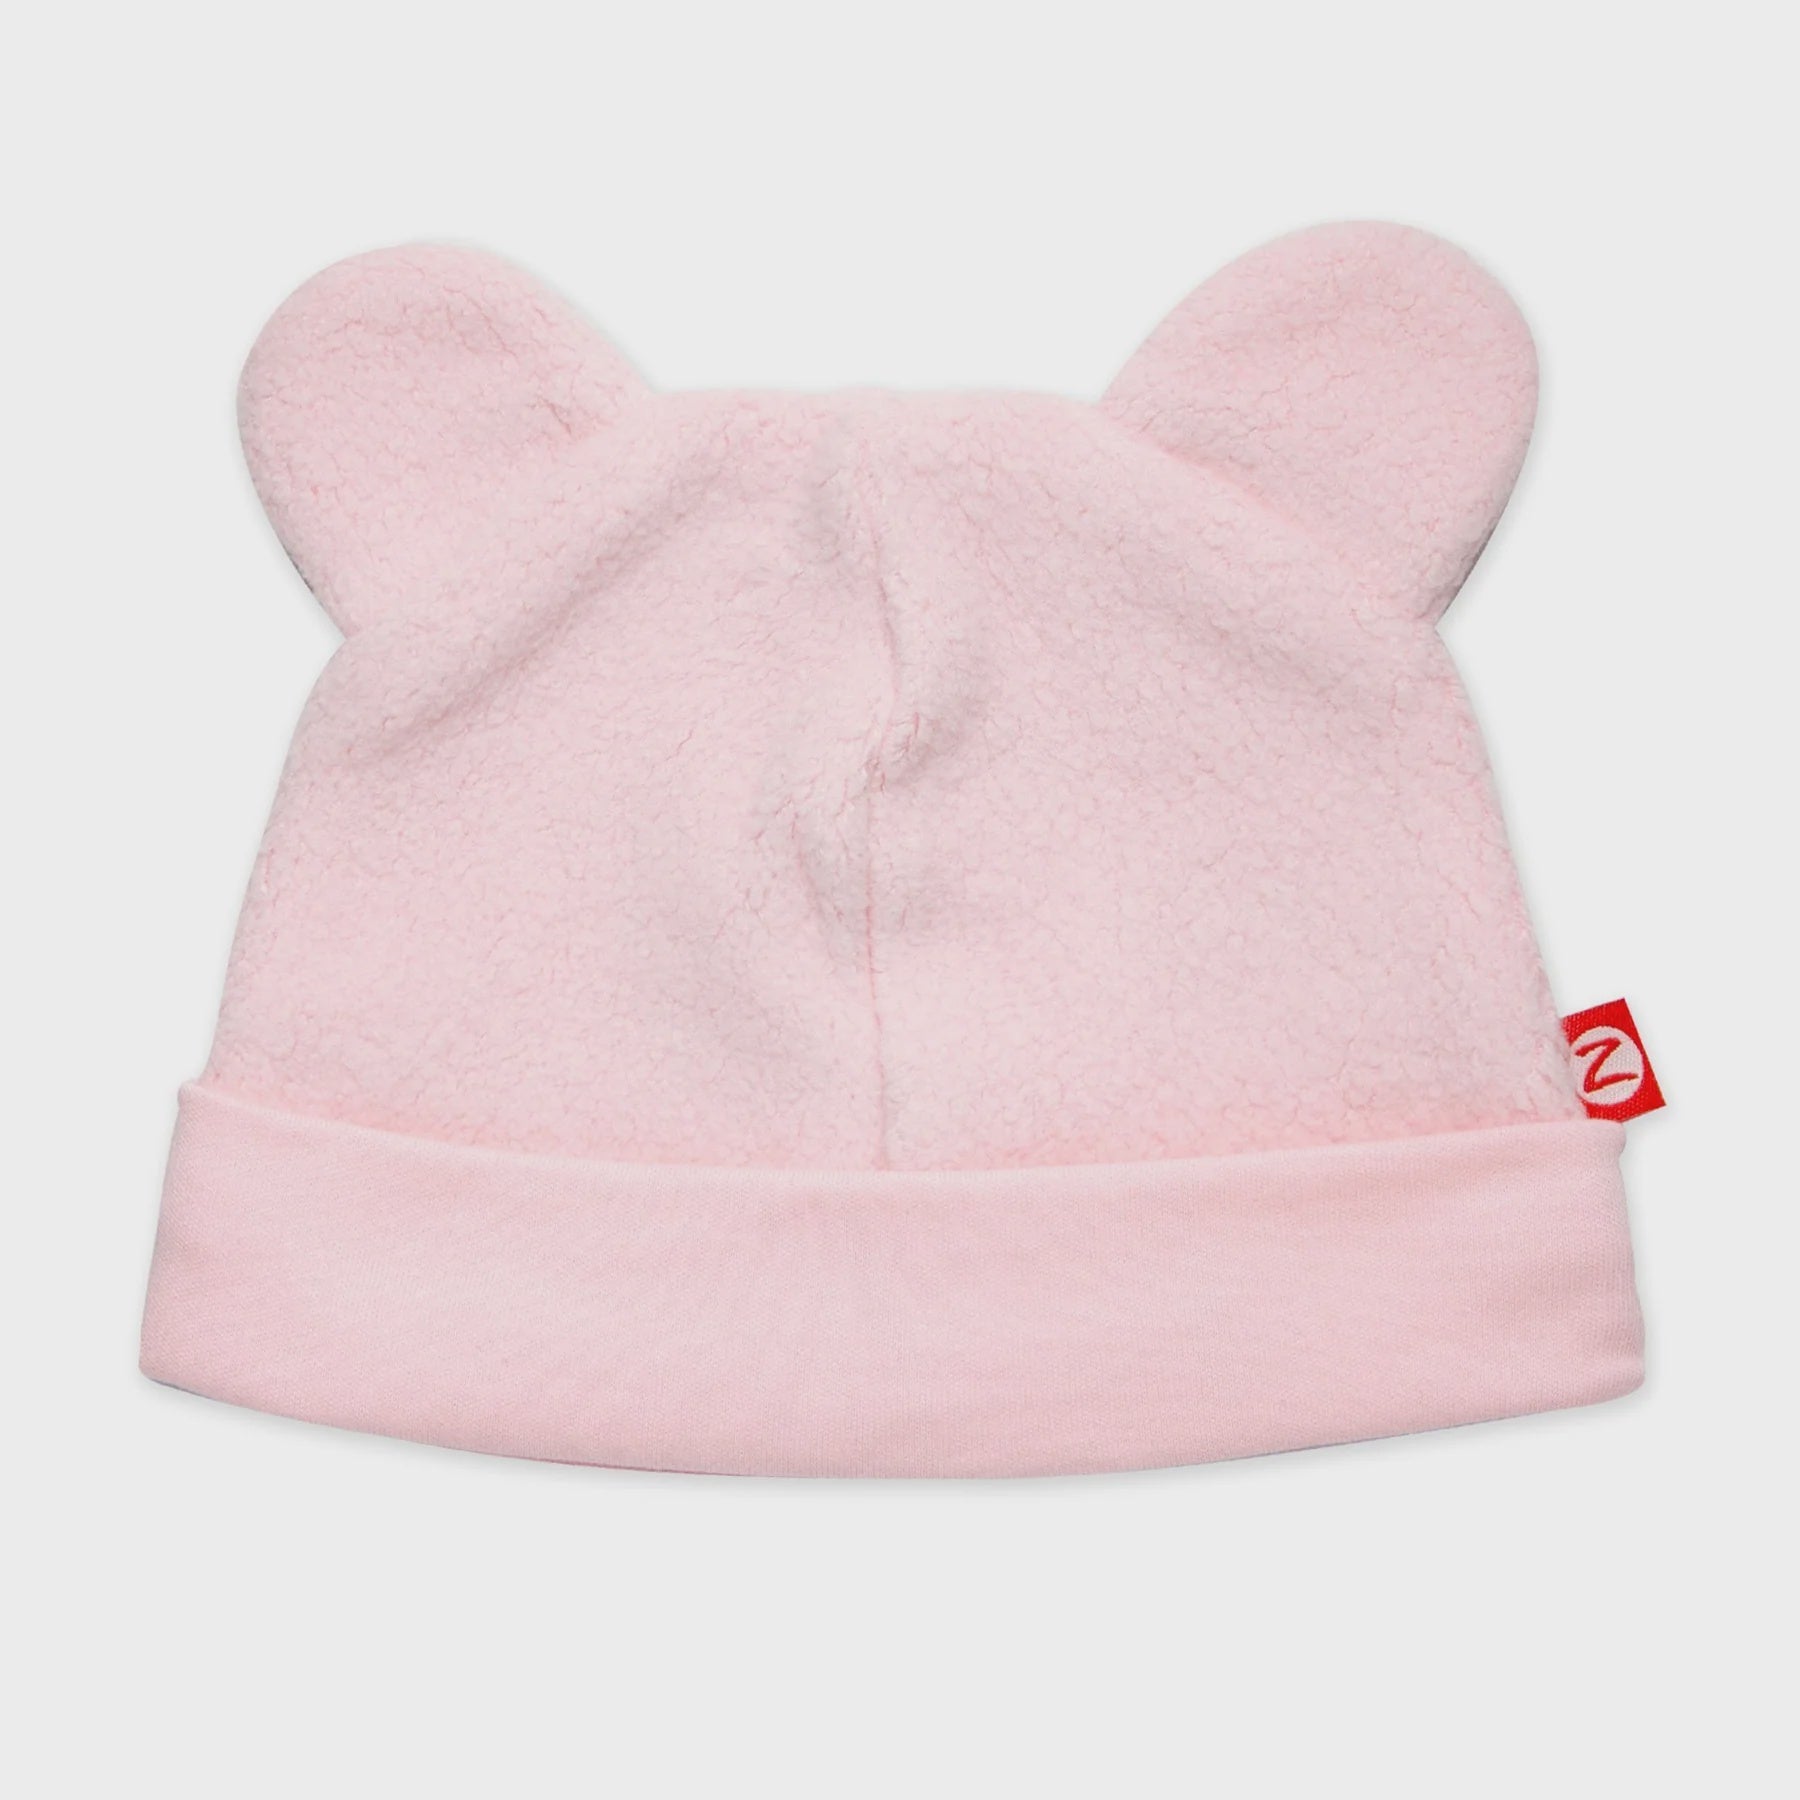 Cozie Fleece Baby Hat - Baby Pink